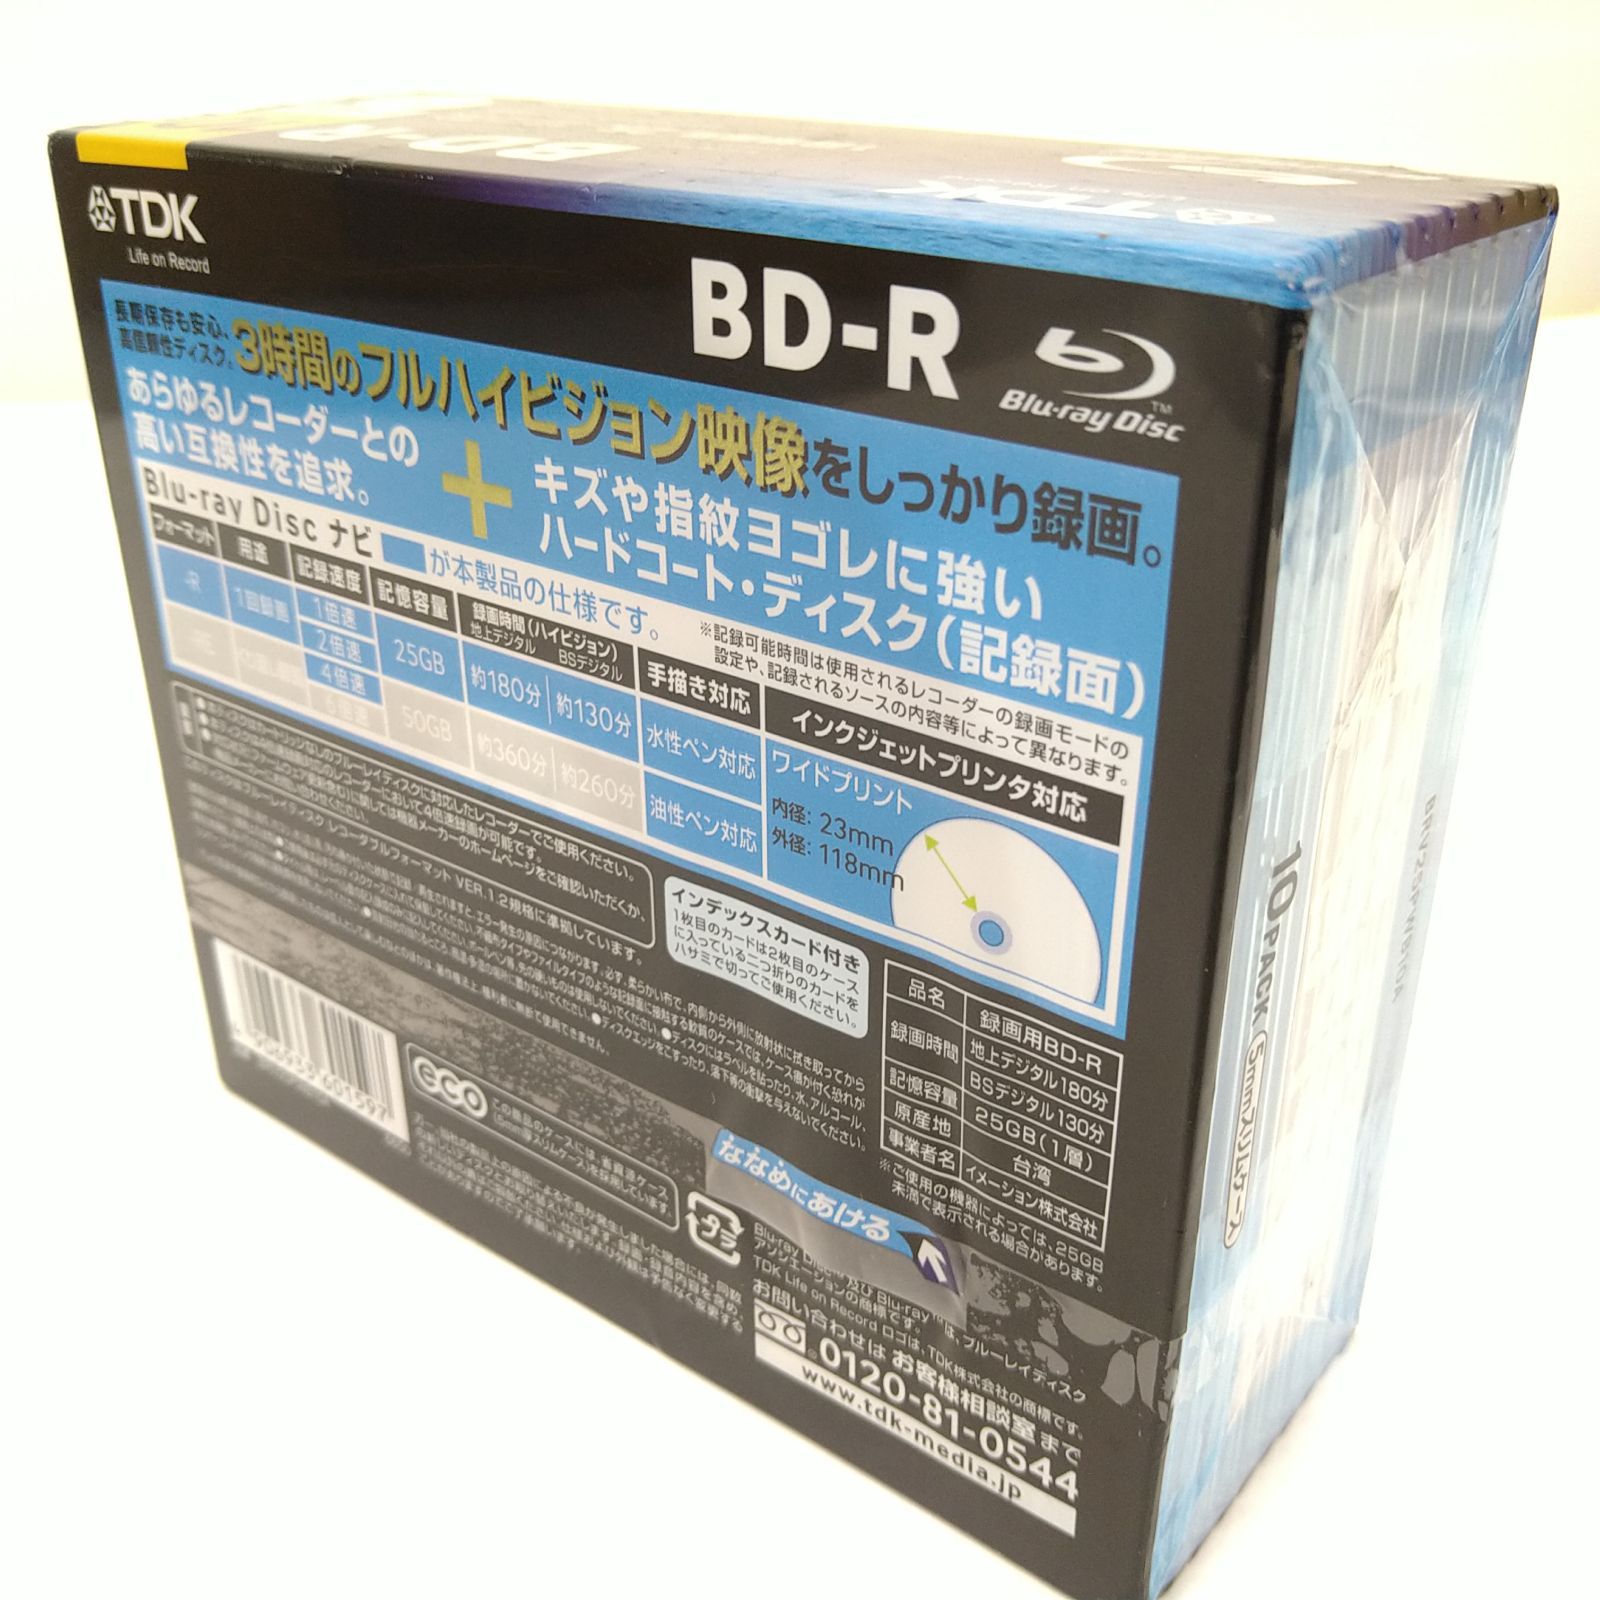 TDK 録画用ブルーレイディスク BD-R規格 25GB 1-4倍速 BRV25